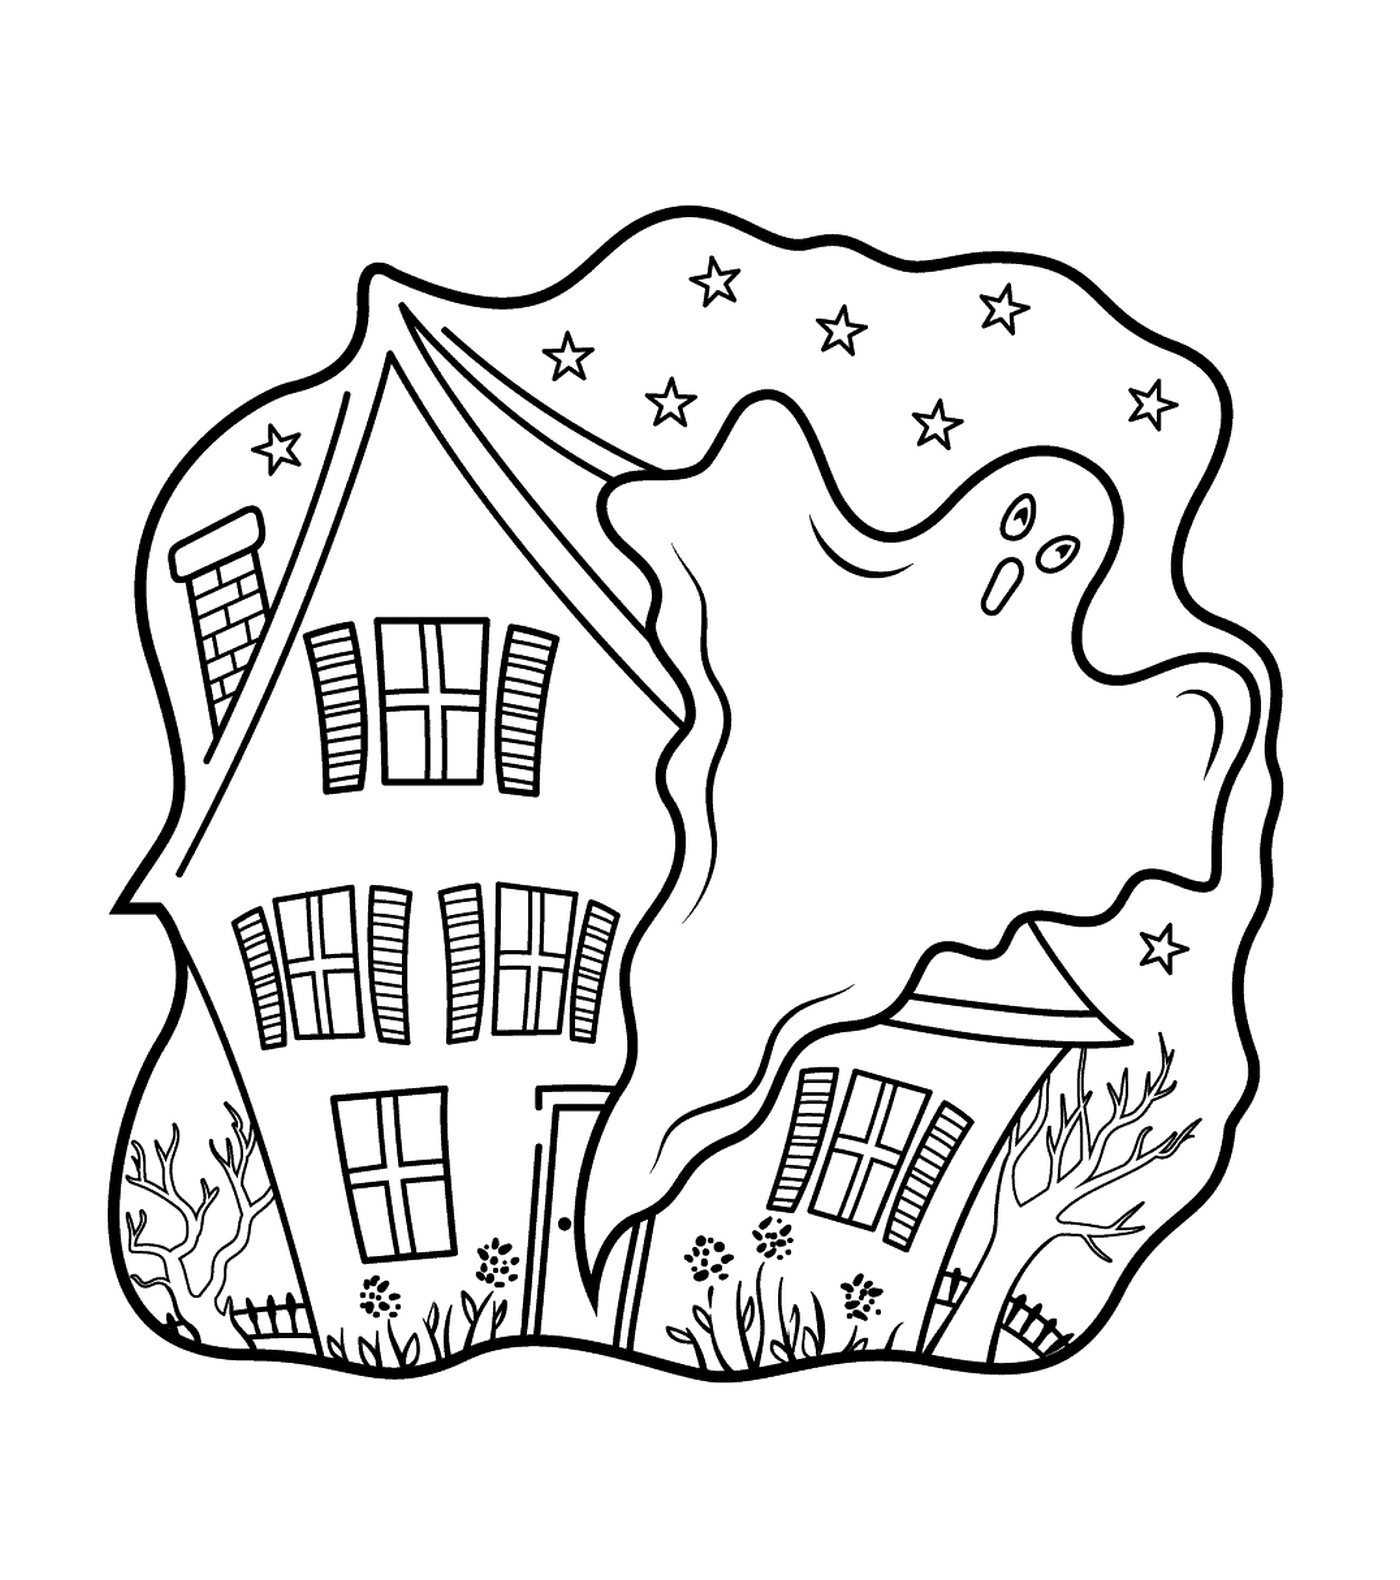  Casa infestata con un fantasma 